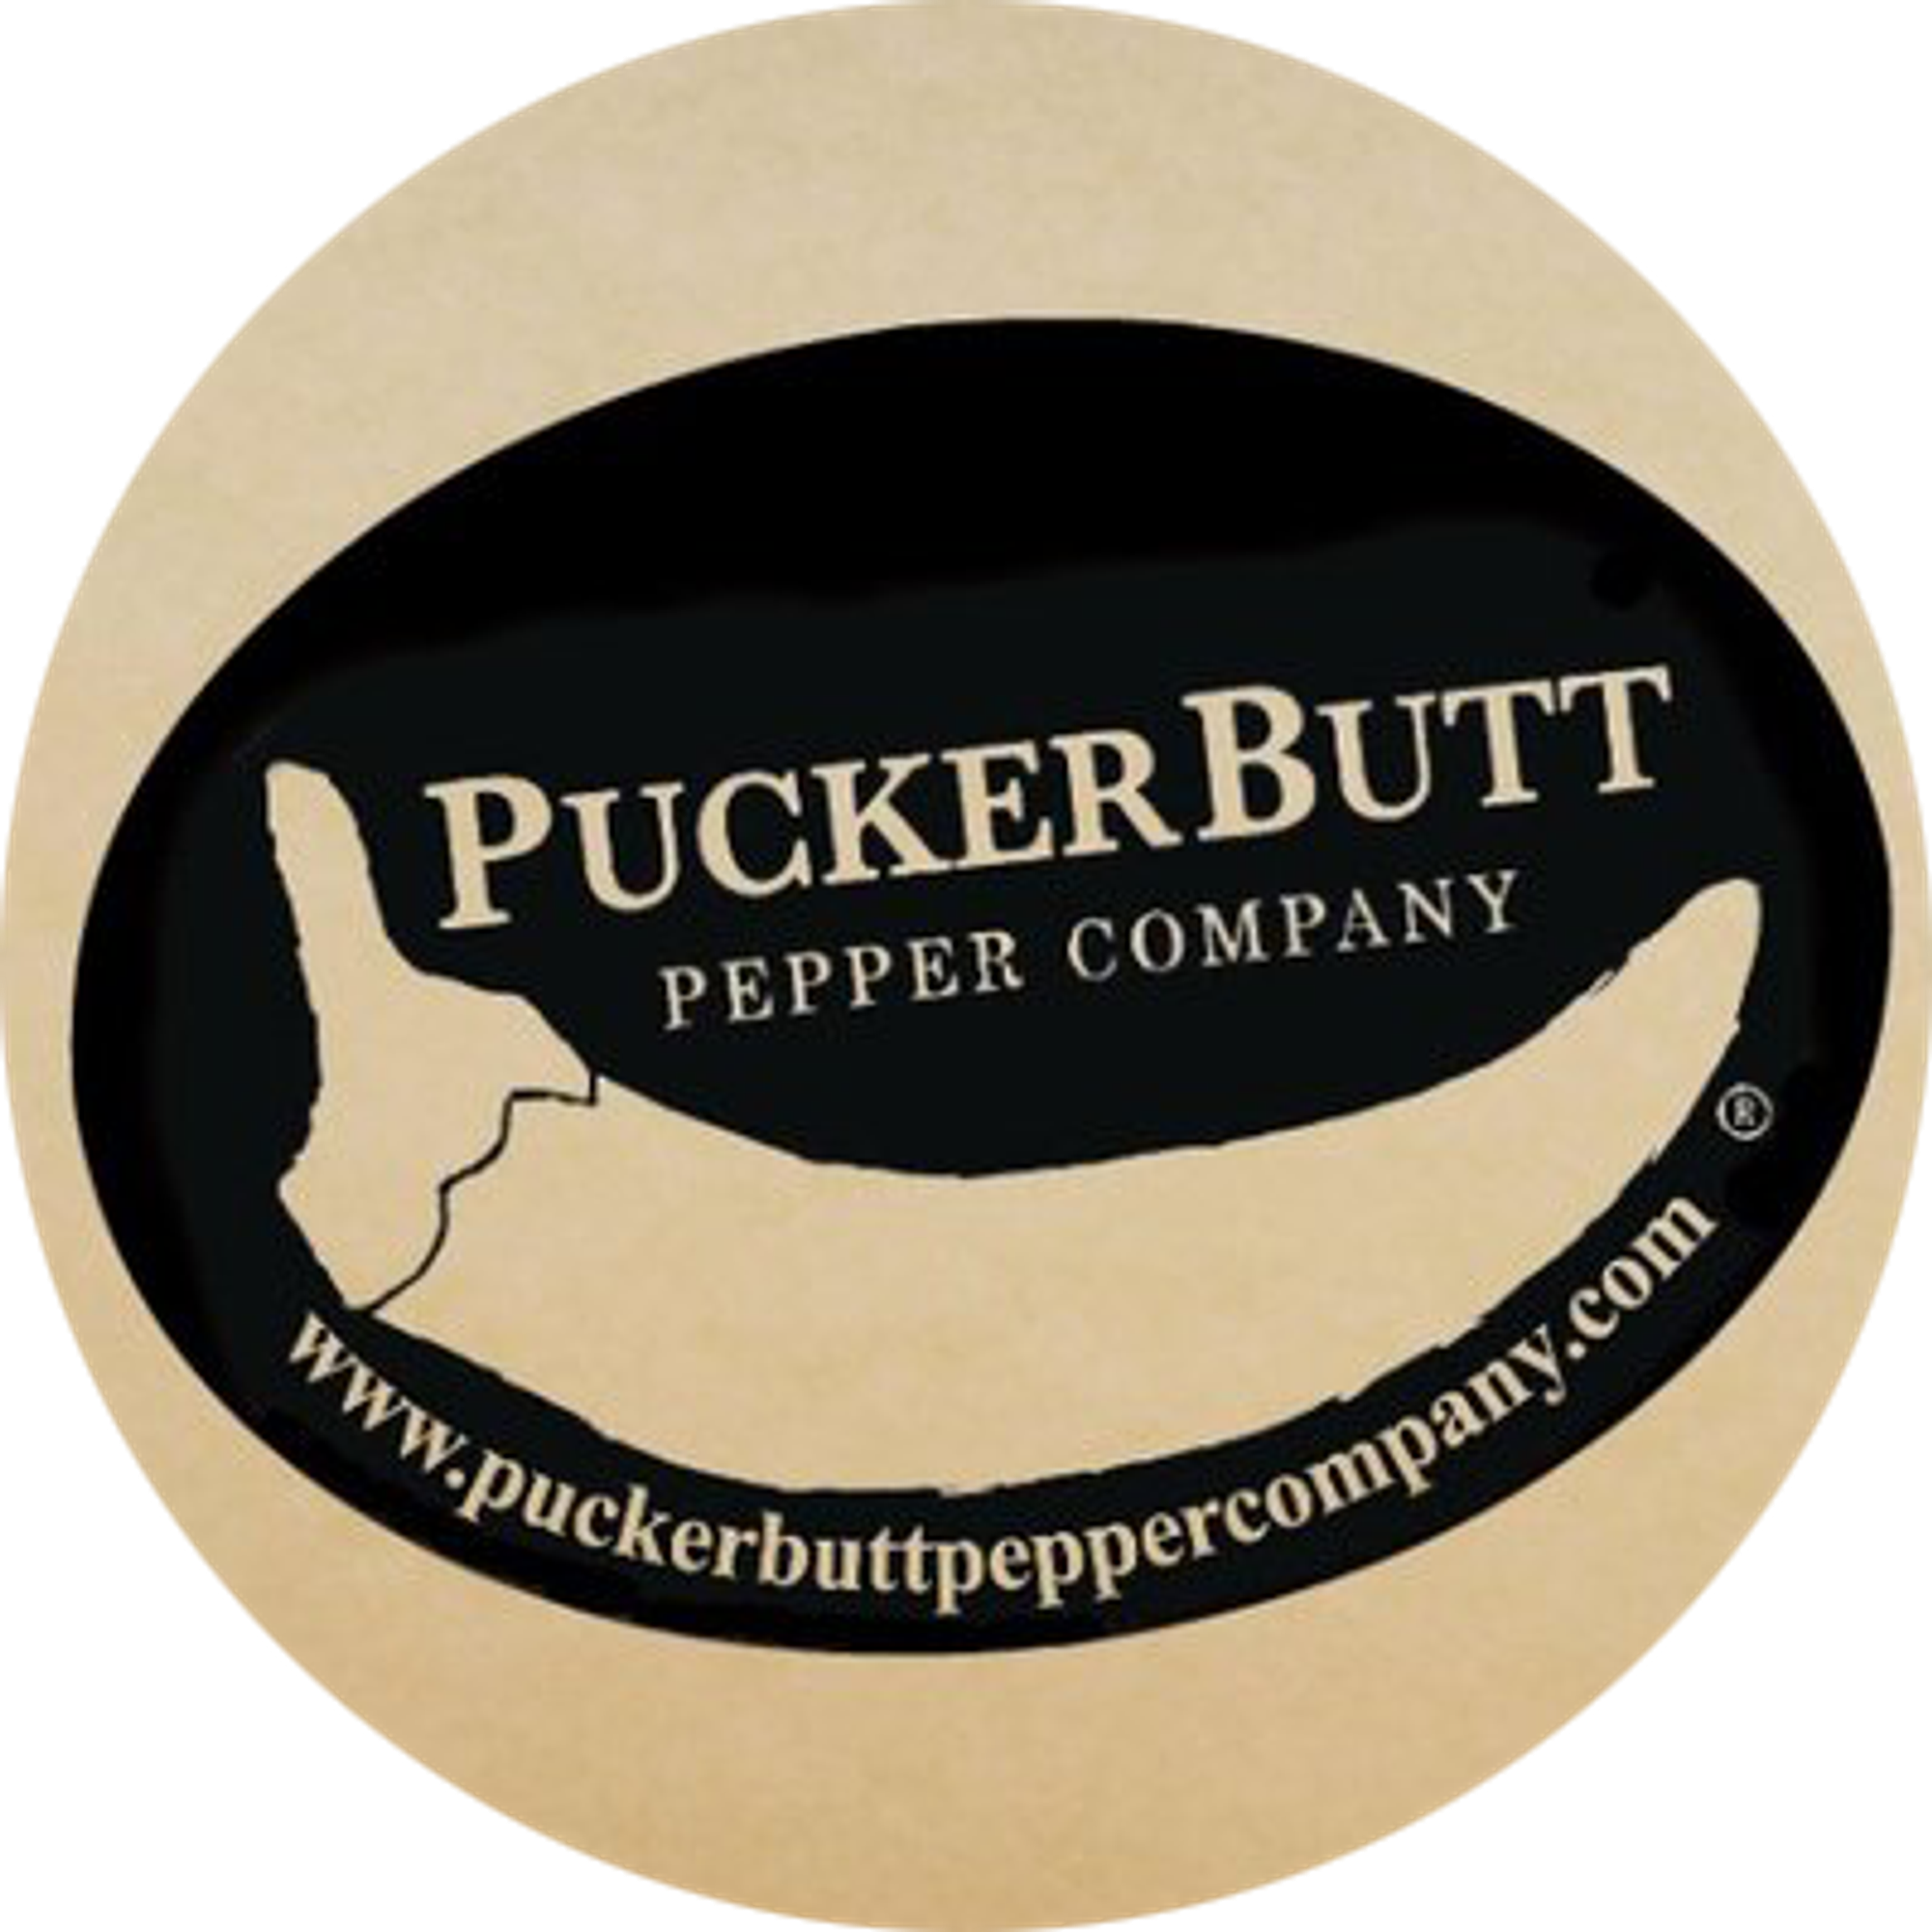 PuckerButt